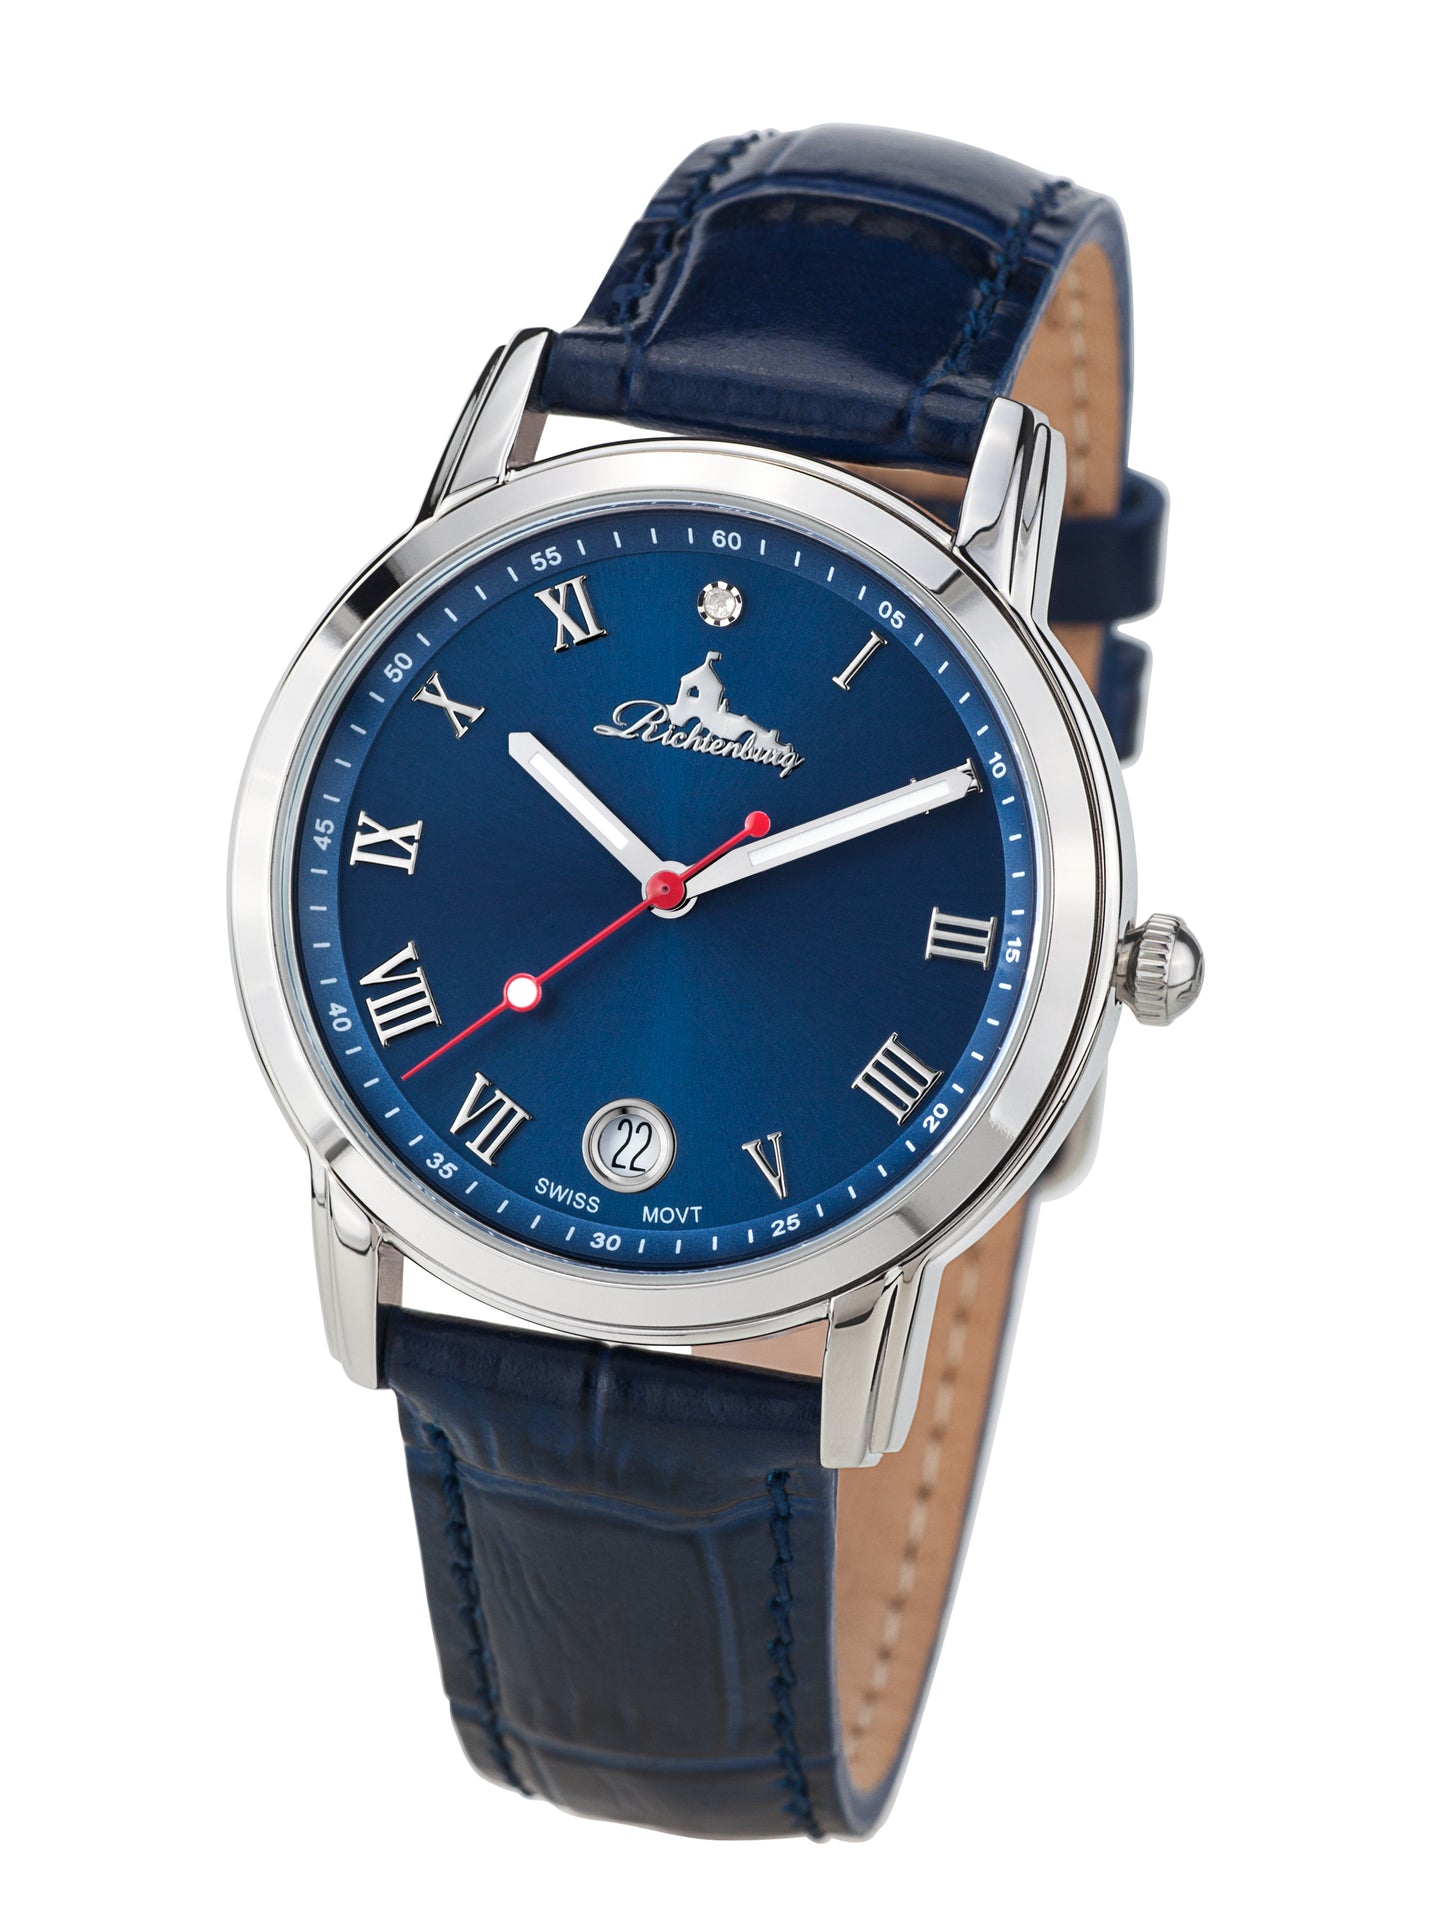 Automatic watches — Gesa — Richtenburg — steel blue